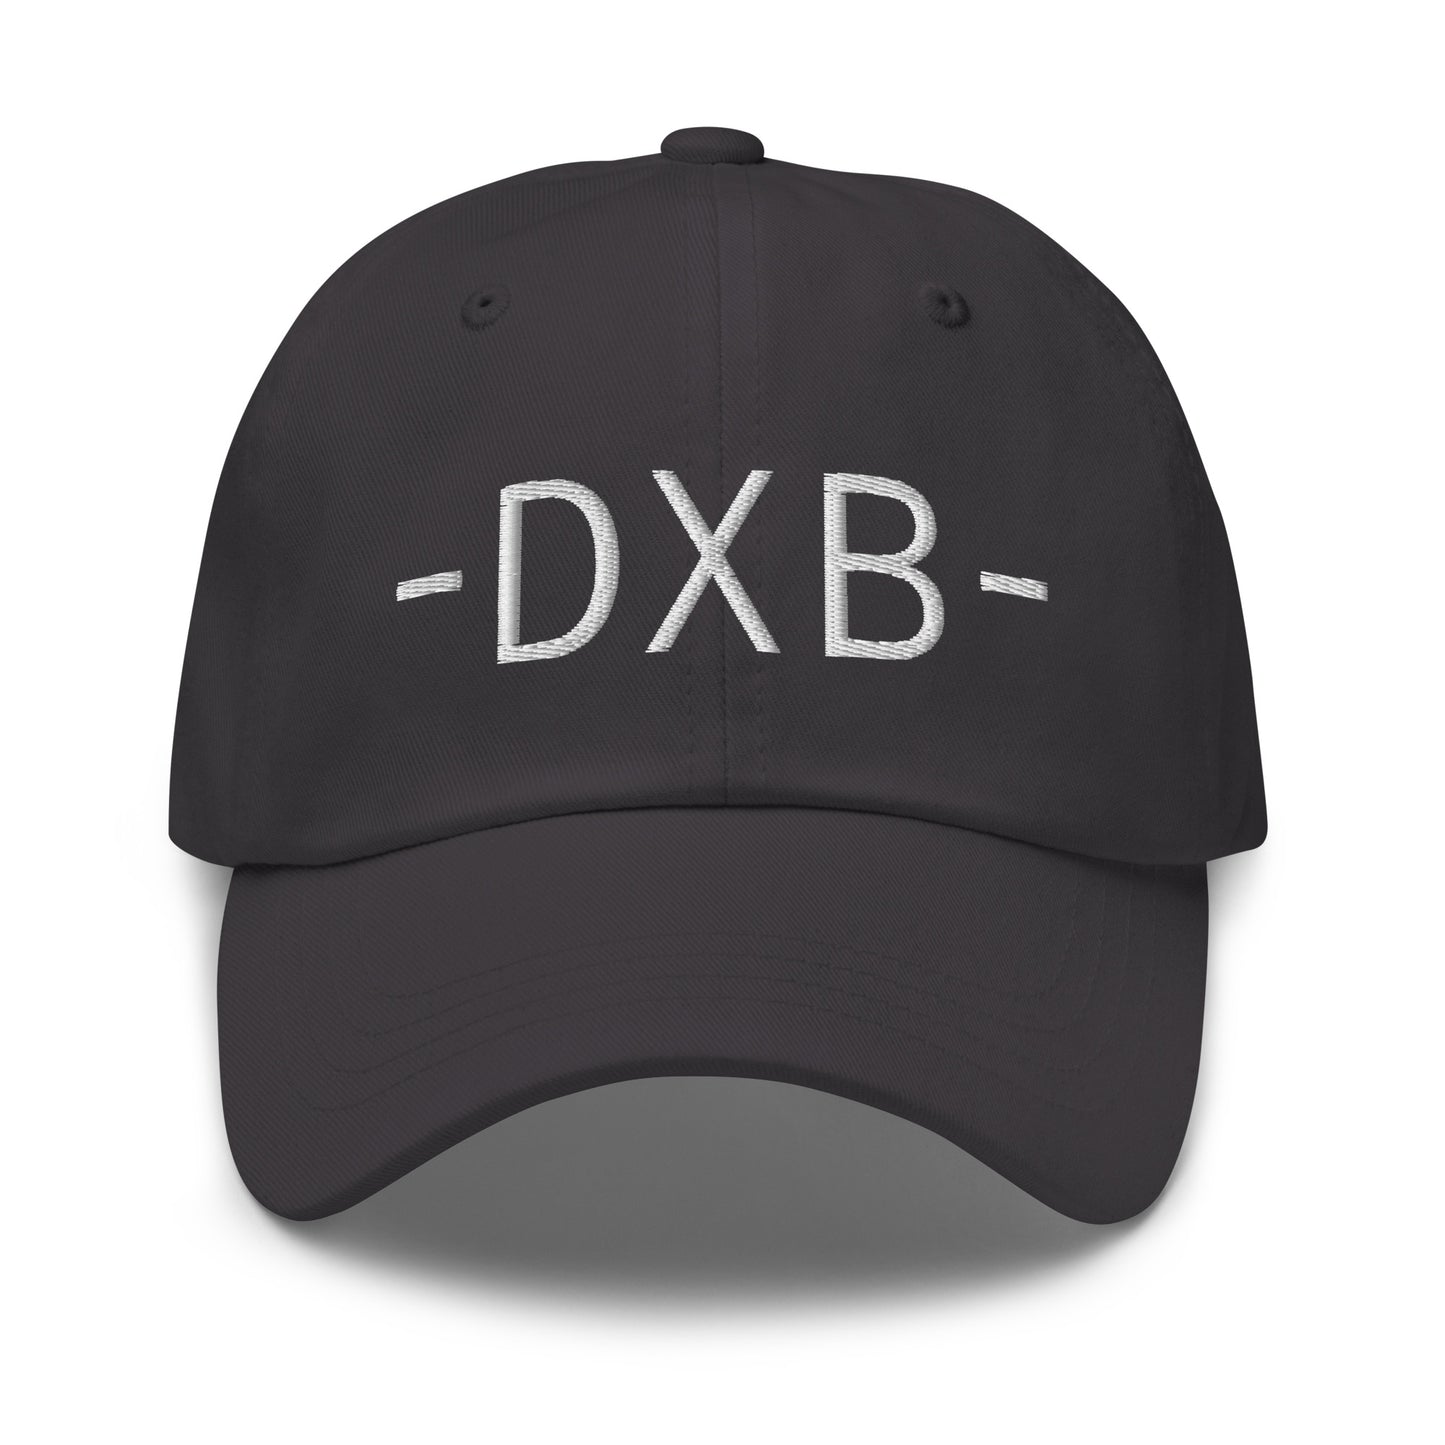 Souvenir Baseball Cap - White • DXB Dubai • YHM Designs - Image 19